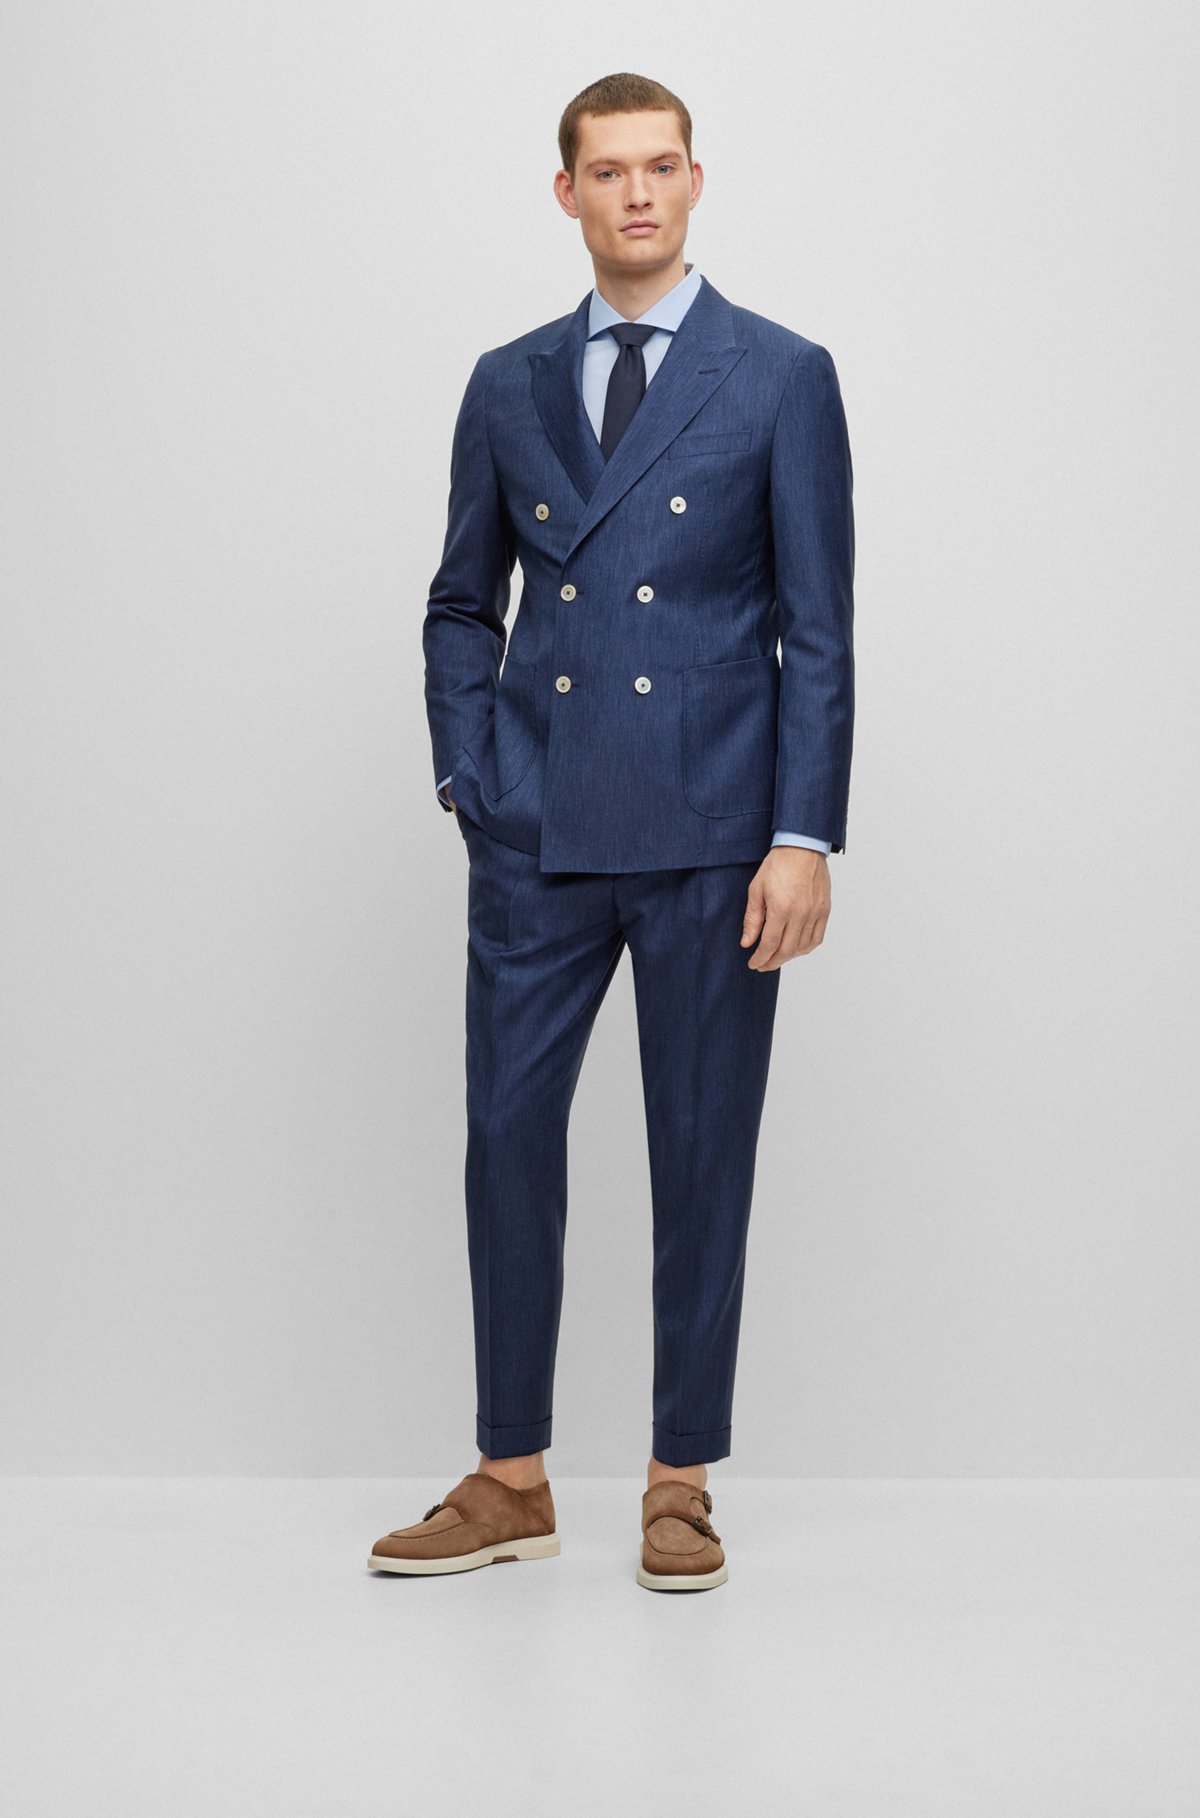 Boss Men's Slim-Fit Double-Breasted Suit in Virgin Wool - Dark Blue - Size 38